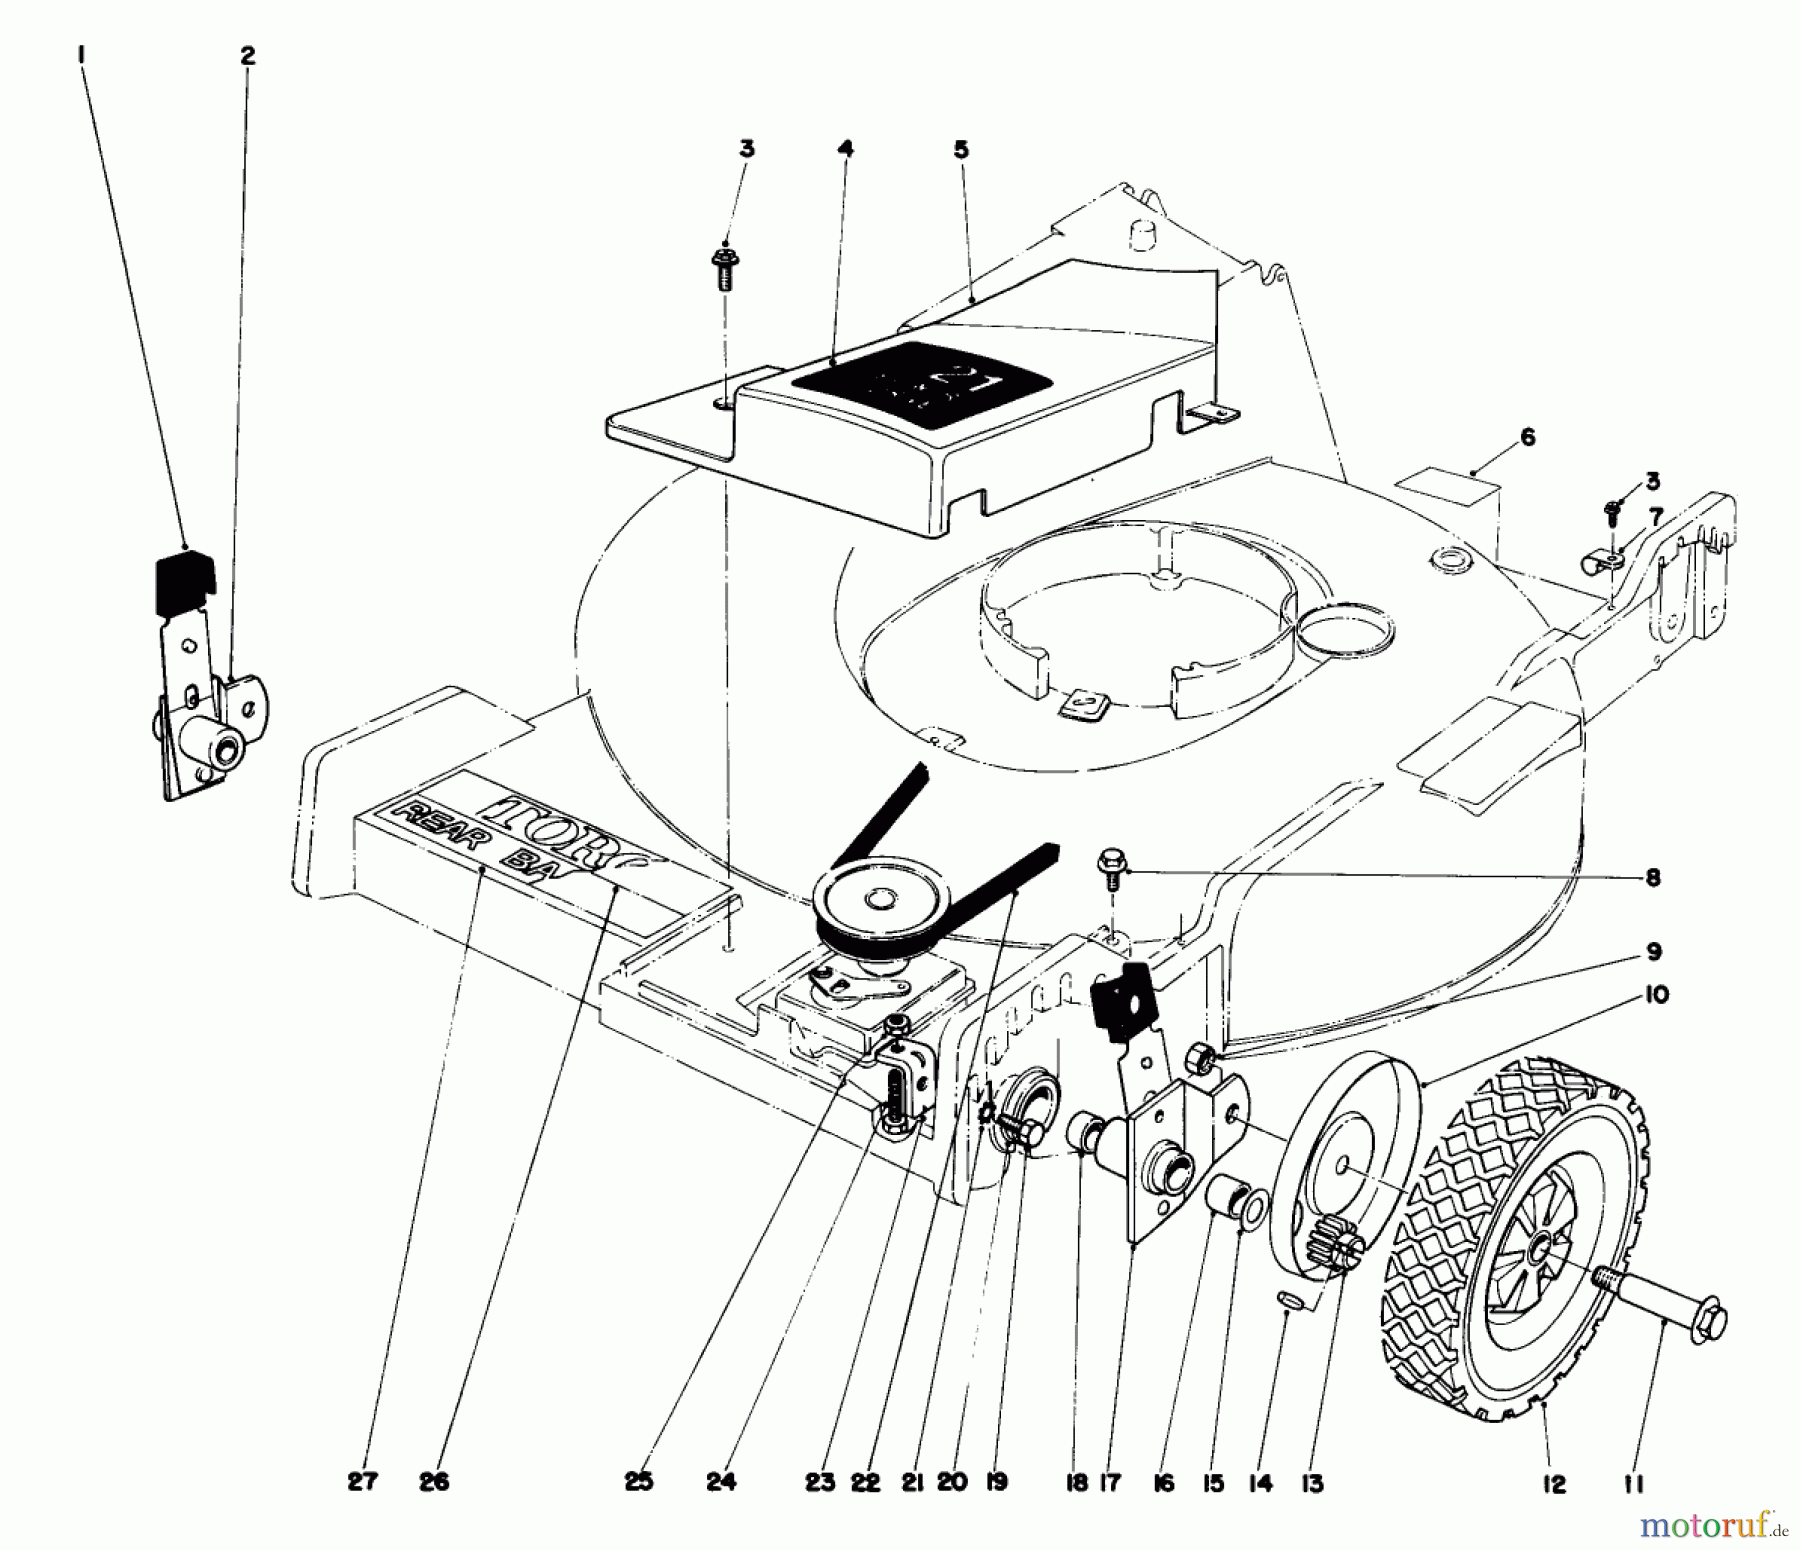  Toro Neu Mowers, Walk-Behind Seite 1 20755 - Toro Lawnmower, 1980 (0000001-0999999) FRONT WHEEL AND PIVOT ARM ASSEMBLY